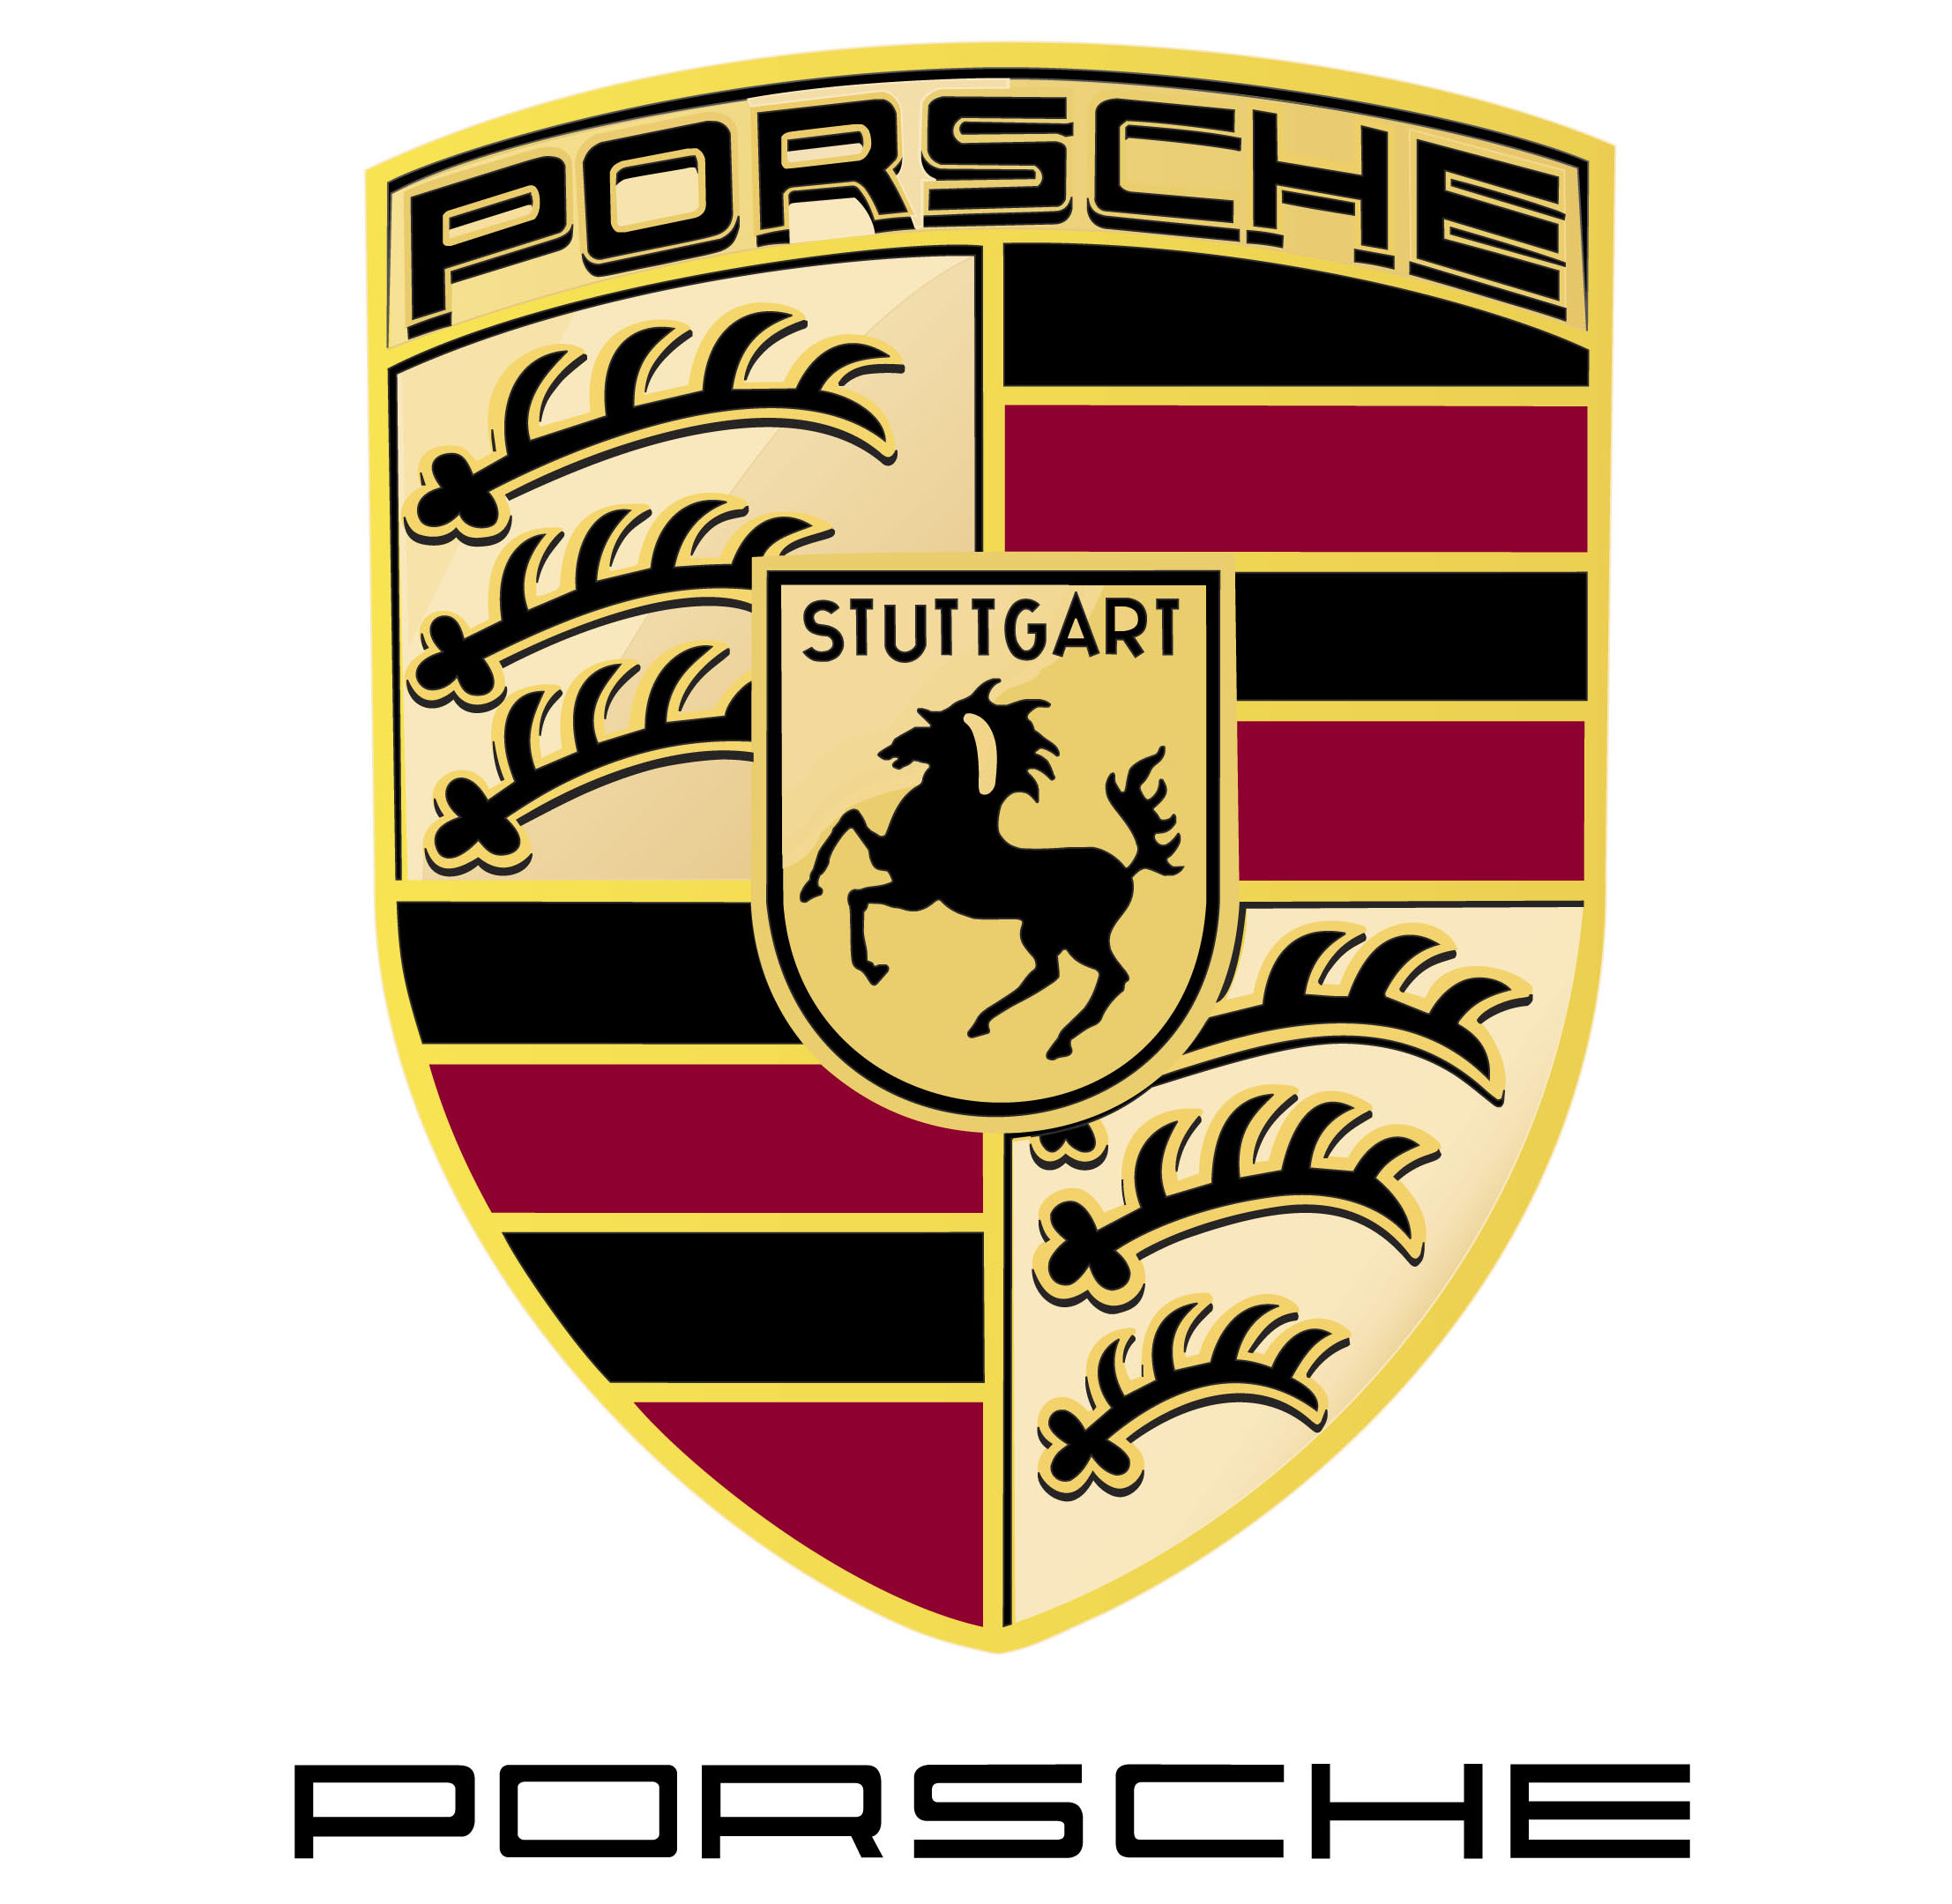 Logo of Piquee's client Porsche